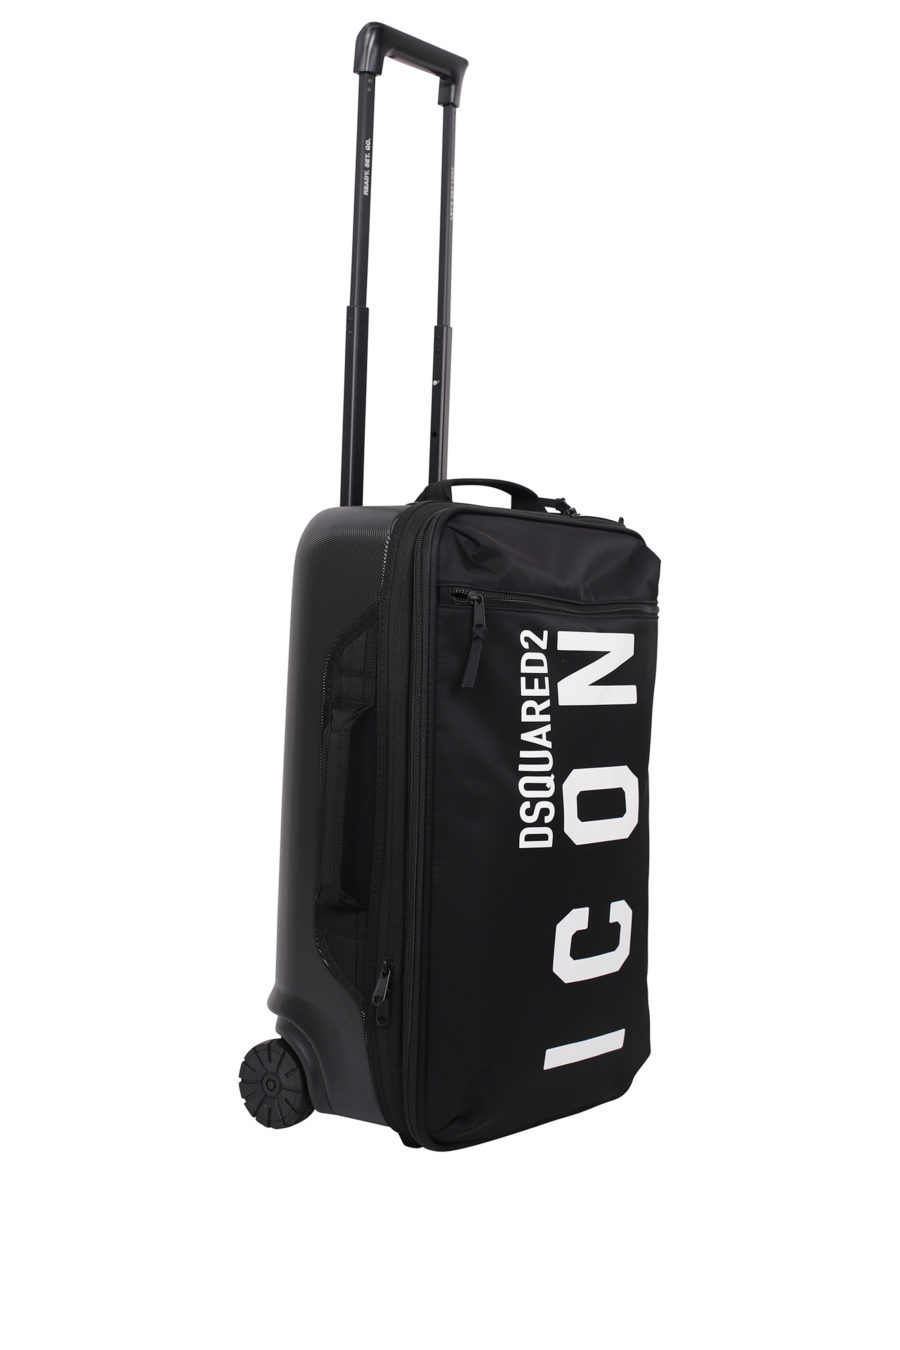 Black wheeled suitcase with "icon" logo - IMG 9701